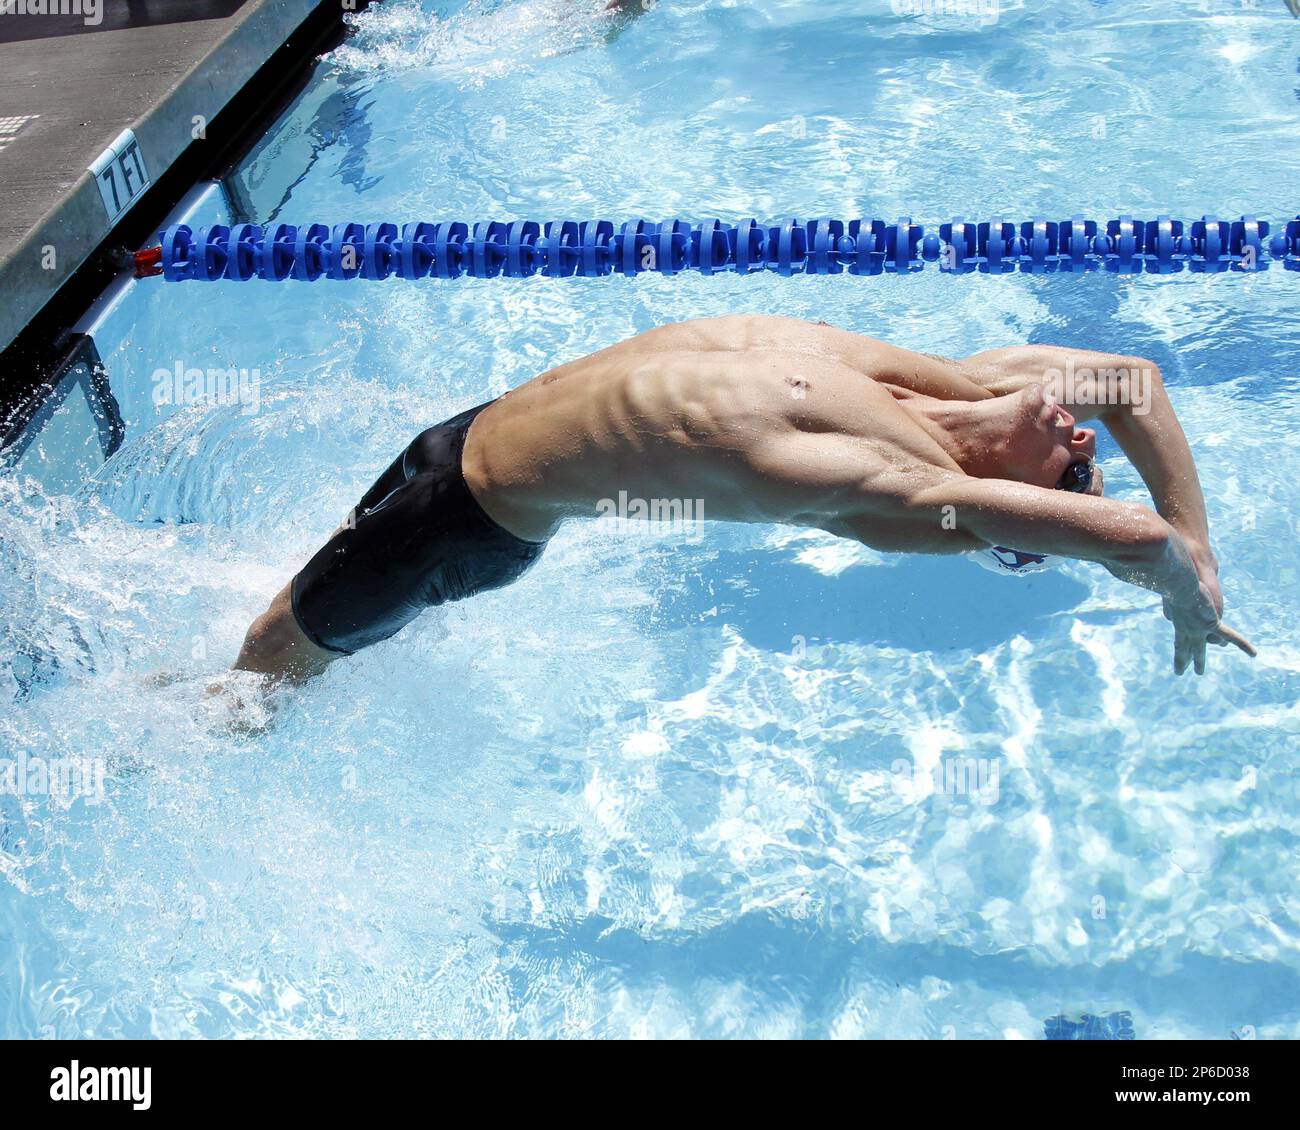 Macklin Groot (RSD-SI) in the Men's 100m Backstroke prelims, at